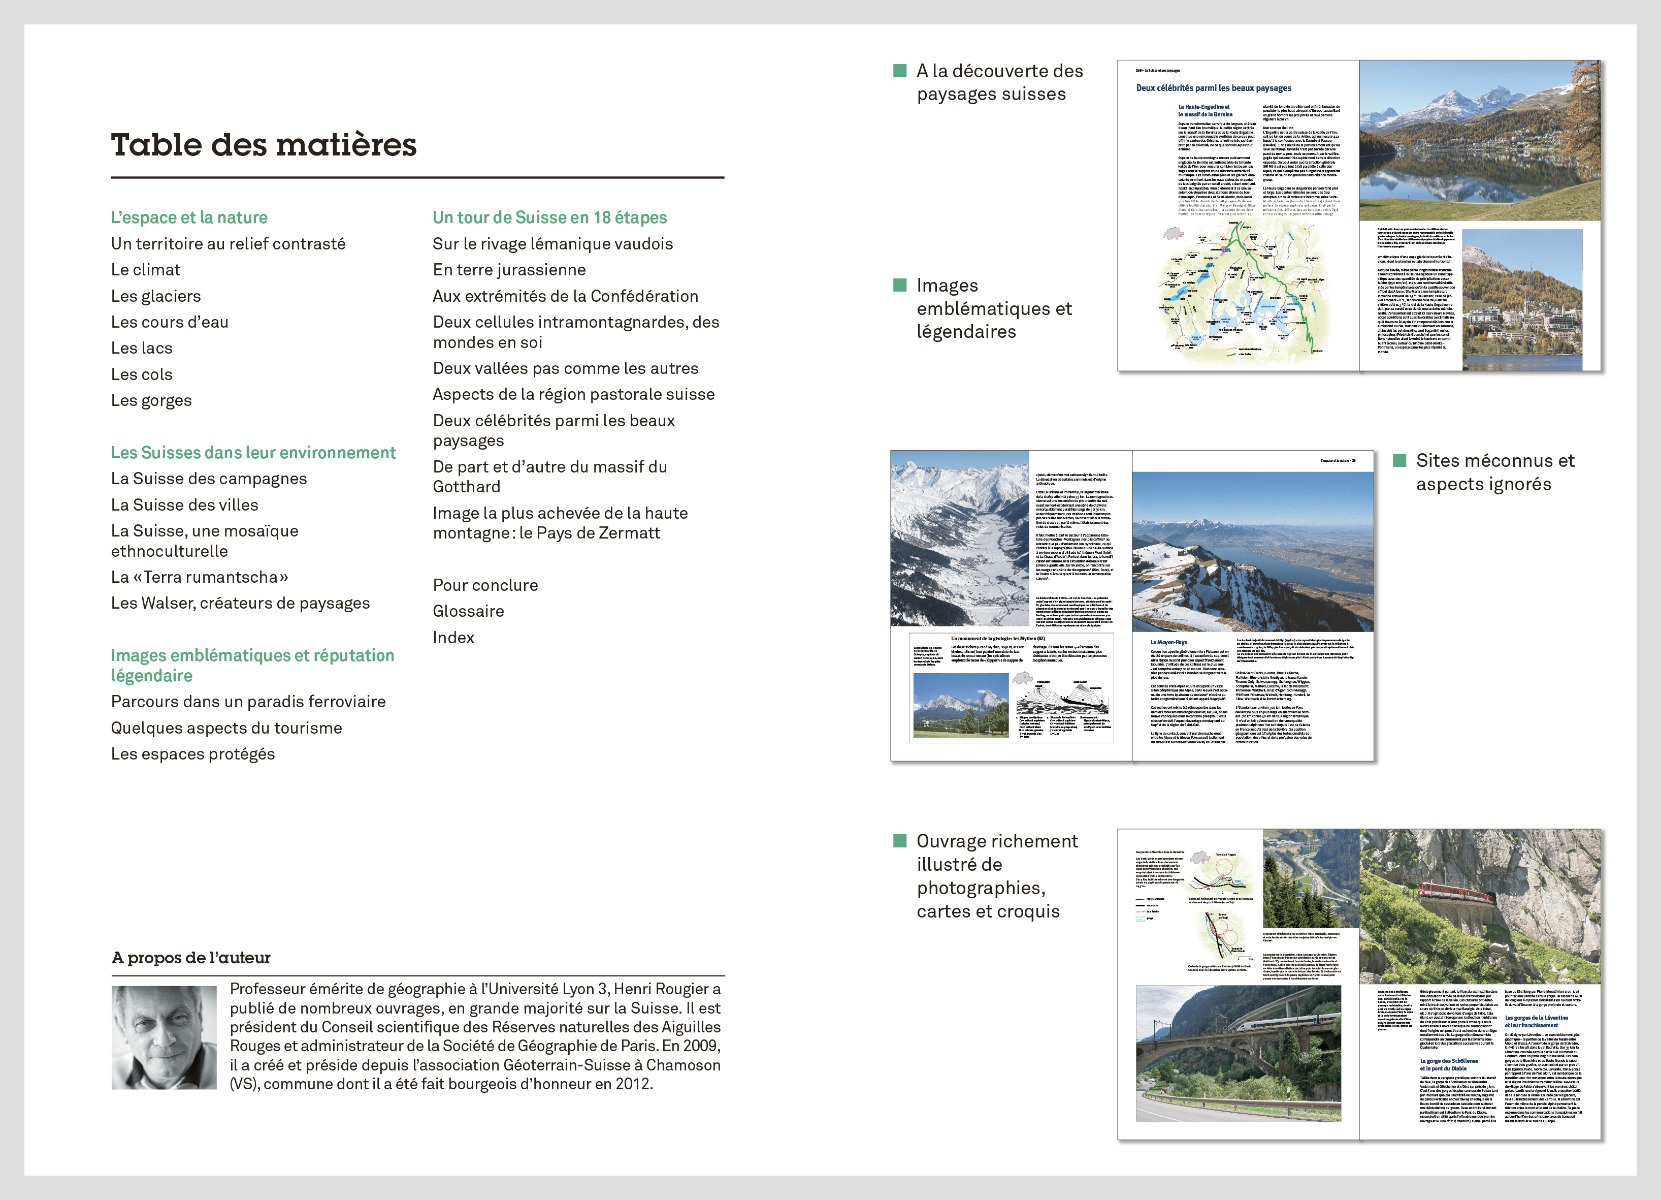 Flyer de présentation du livre «La Suisse et ses paysages»